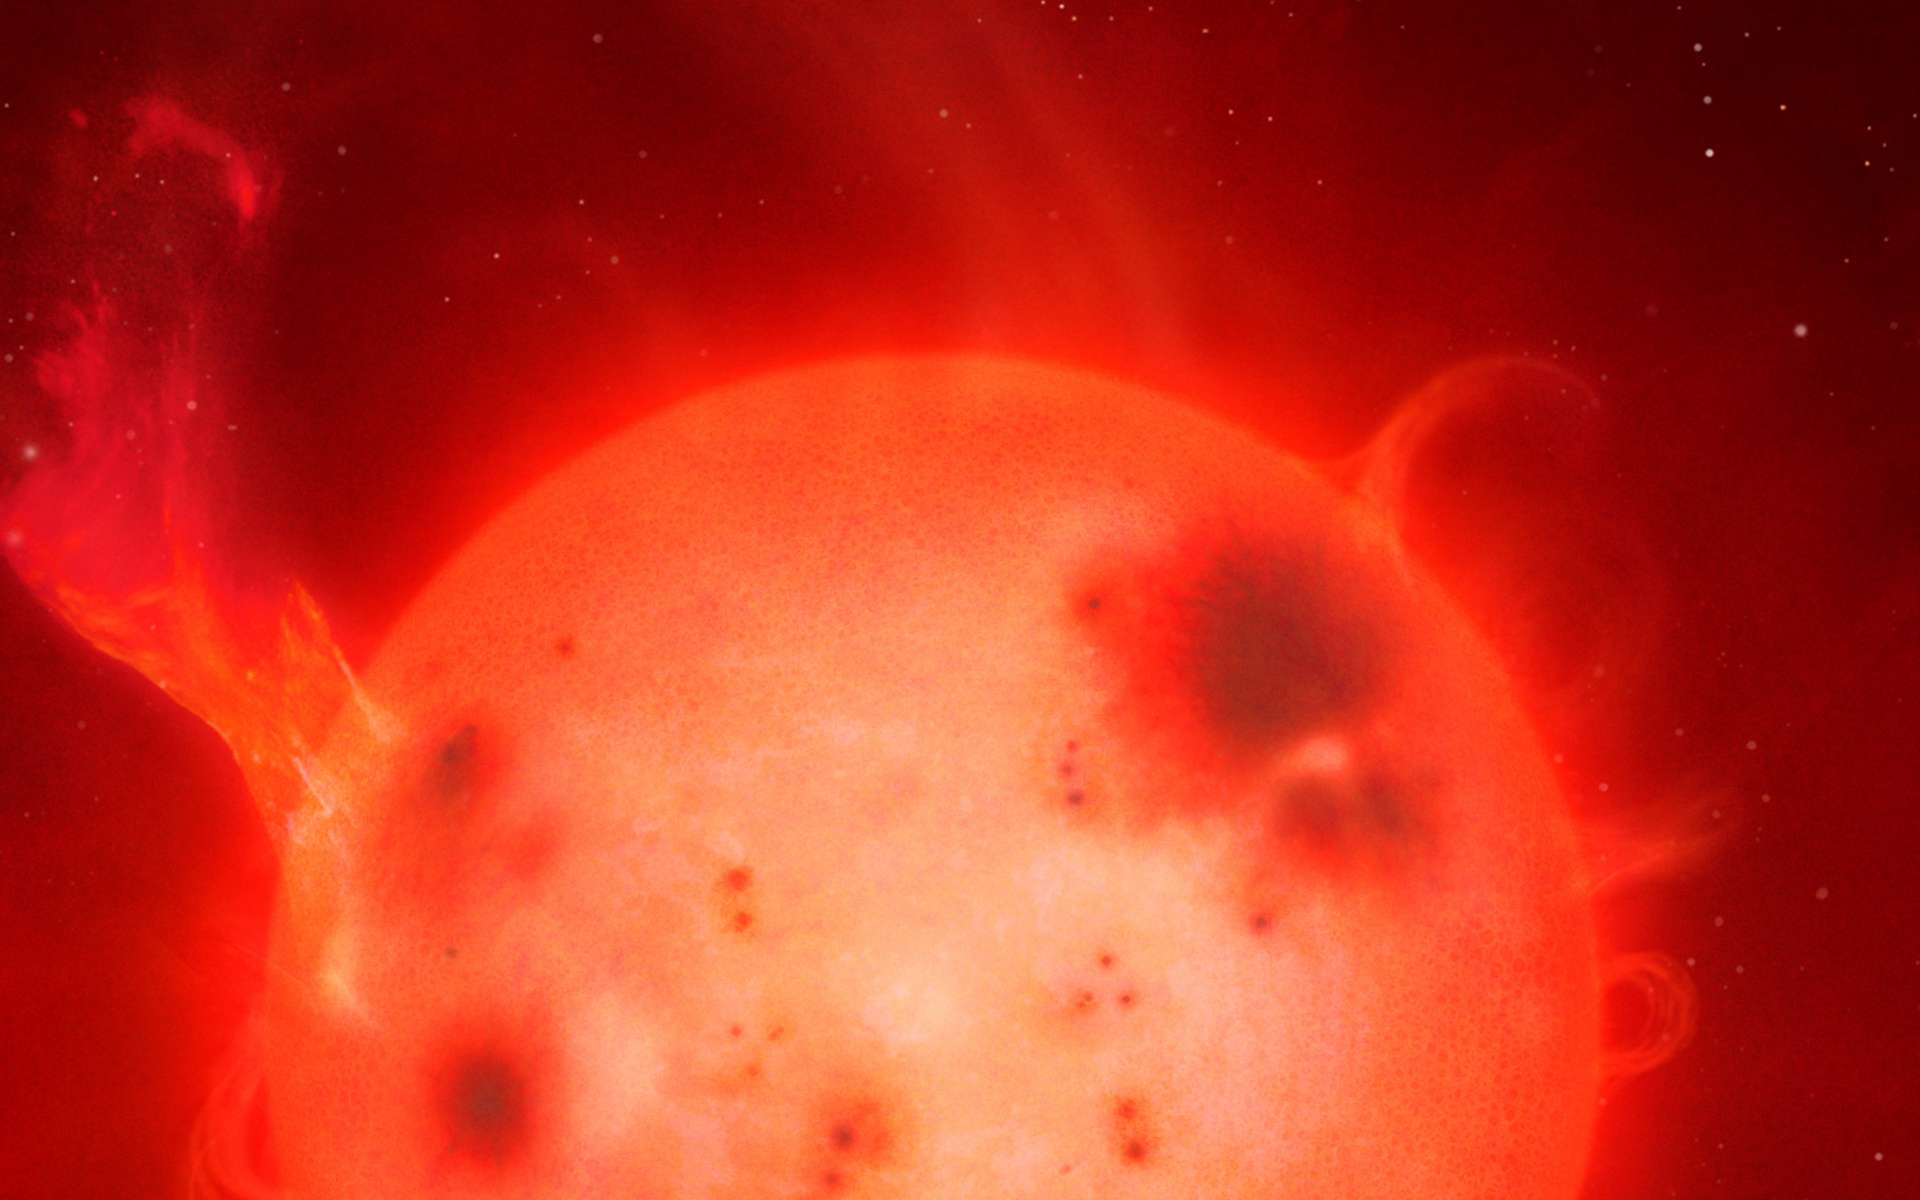 Les naines rouges sont des étoiles qui restent turbulentes durant des milliards d'années. © University of Warwick, Mark Garlick